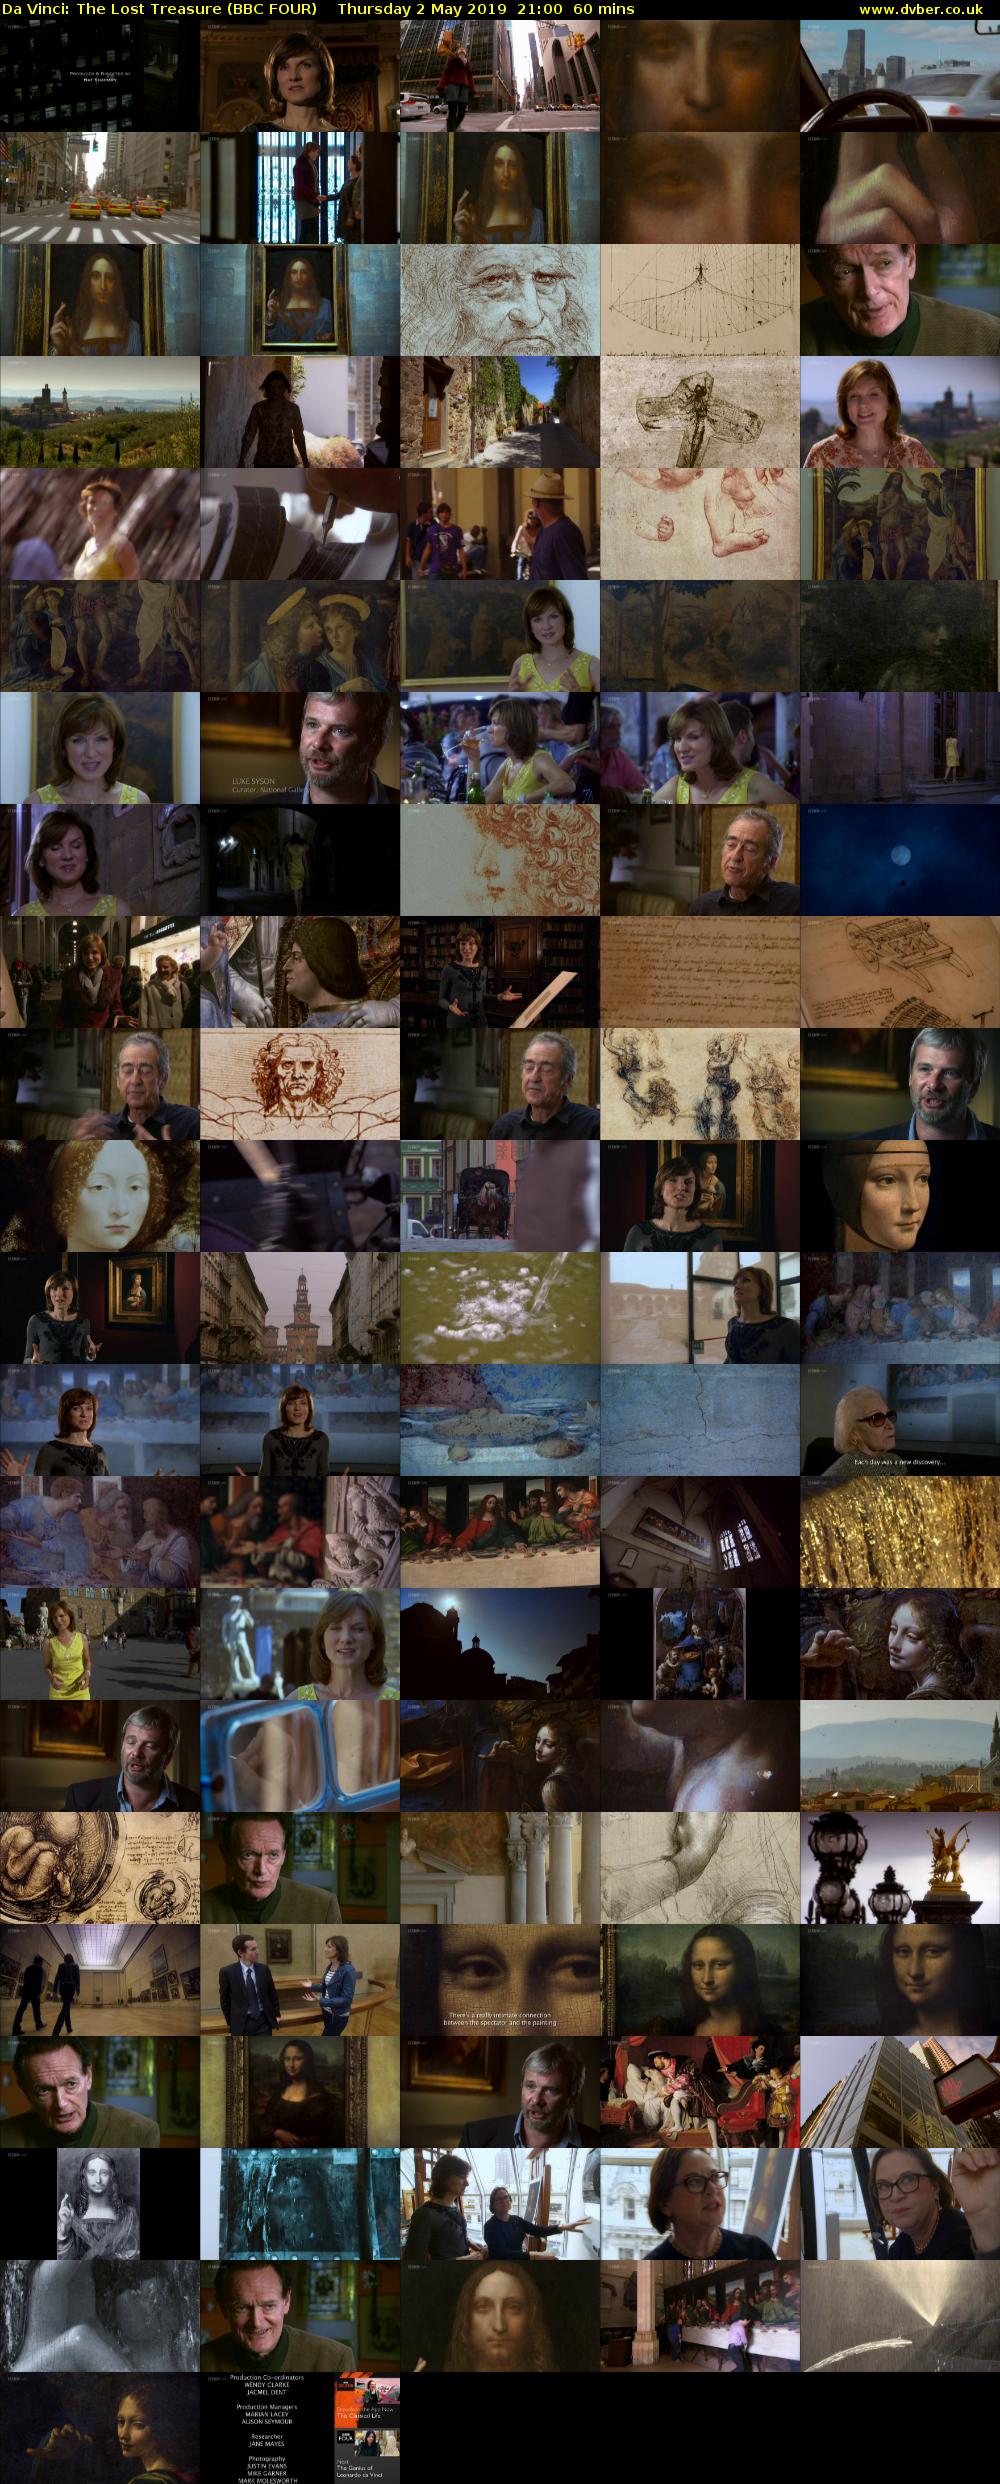 Da Vinci: The Lost Treasure (BBC FOUR) Thursday 2 May 2019 21:00 - 22:00